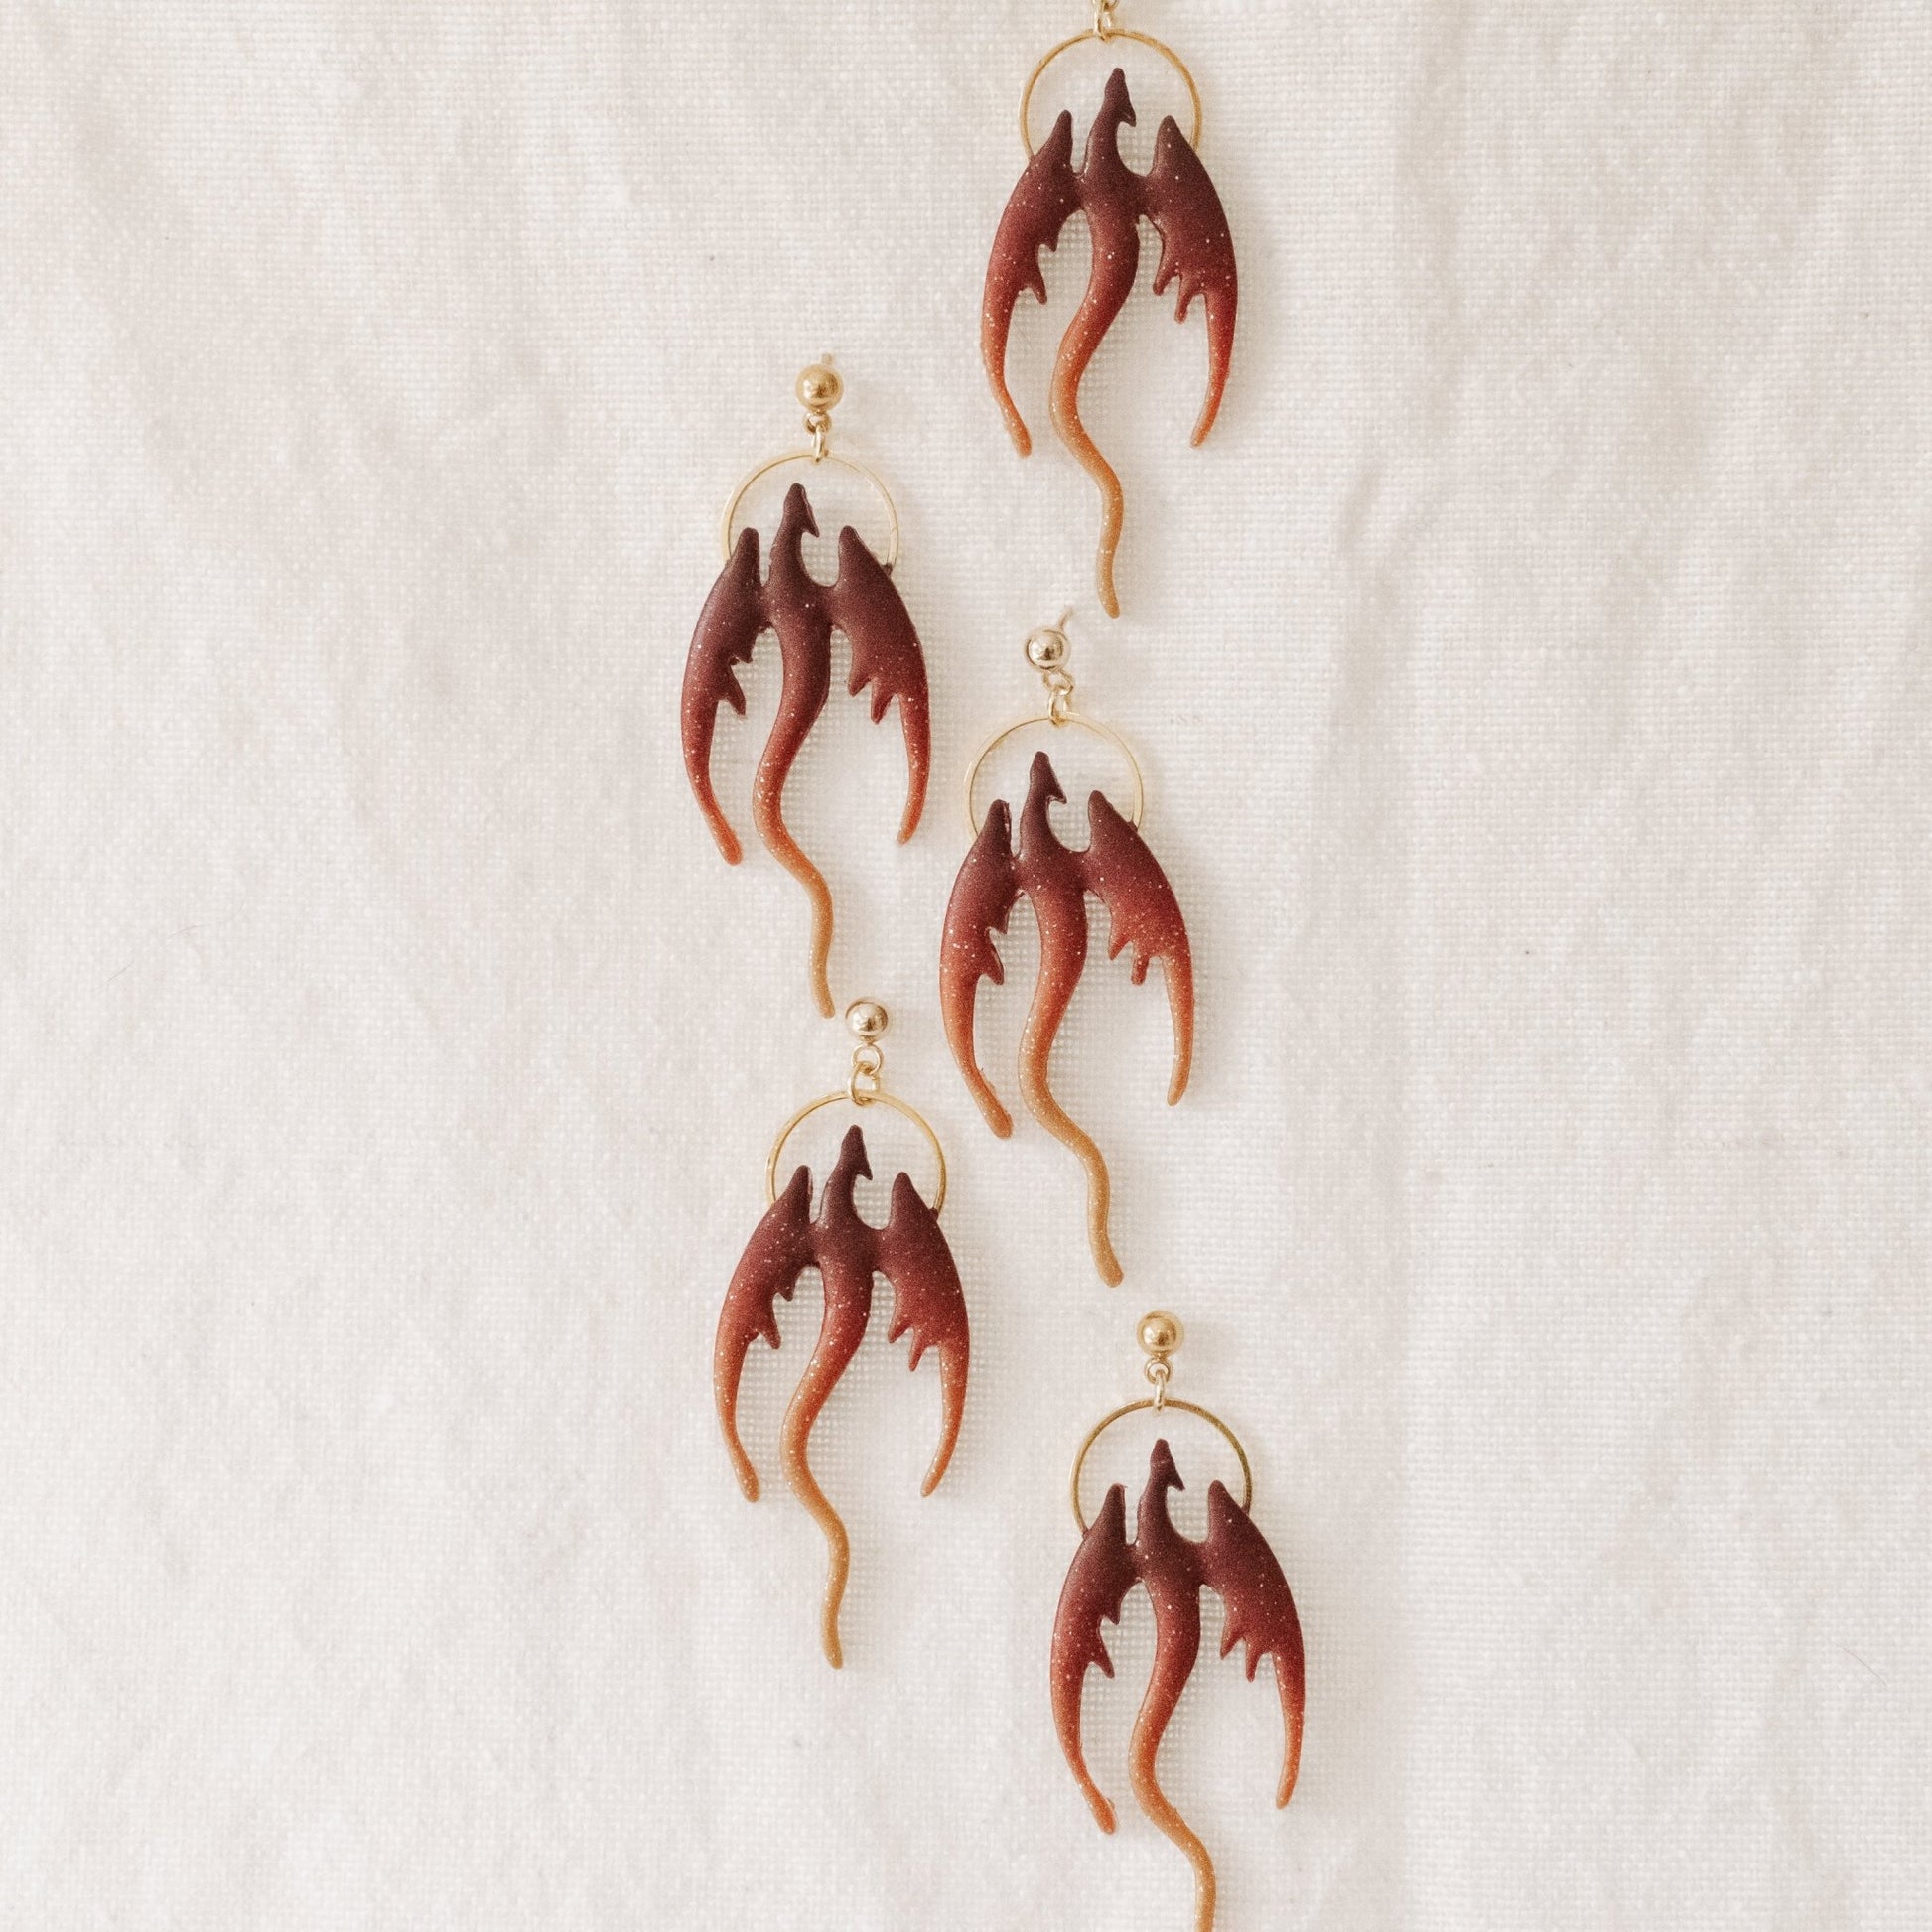 Sunset Dragon Earrings - Claymore NZ - Earrings